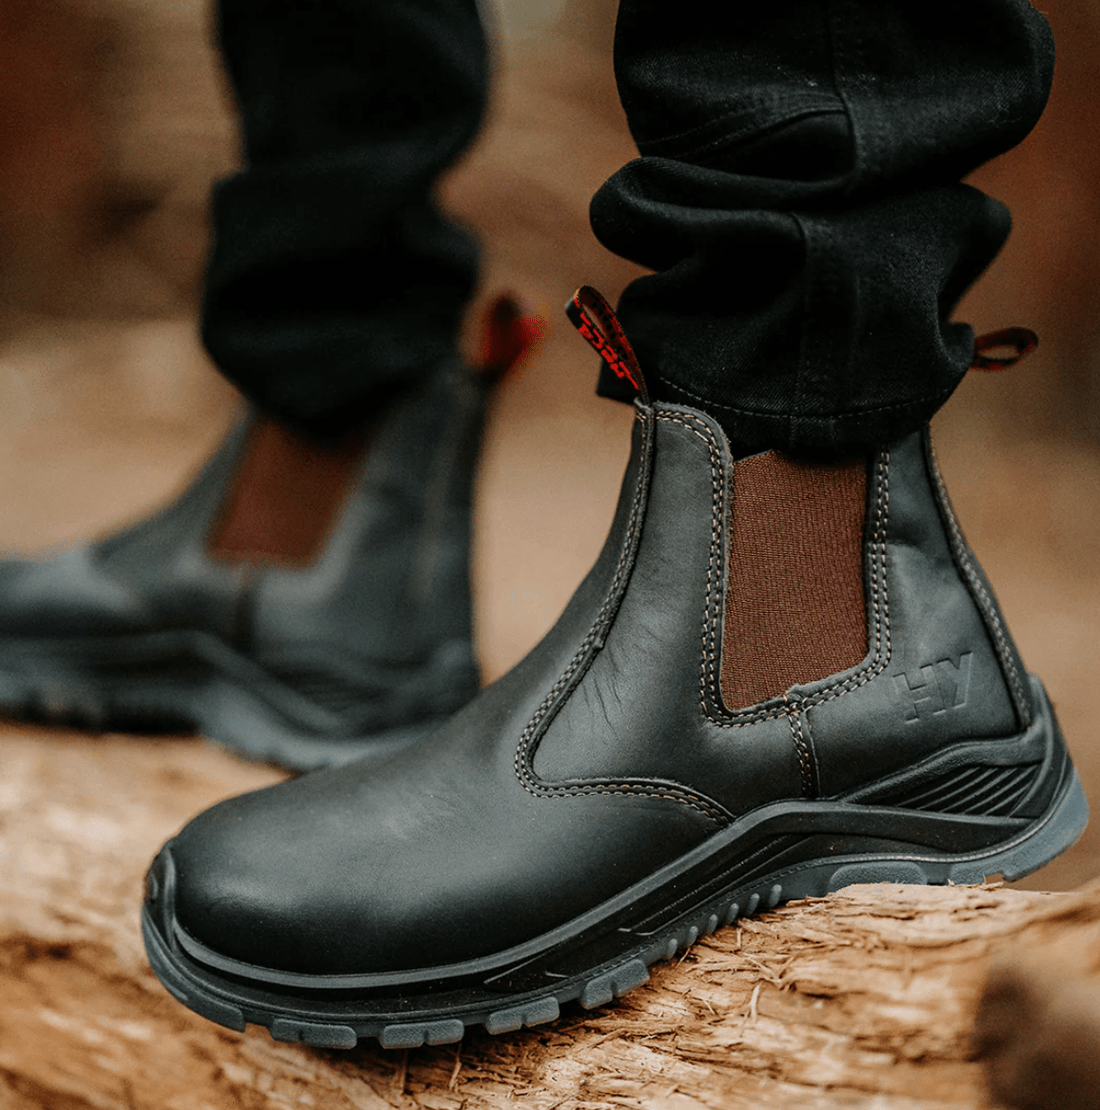 Hard Yakka Mens BANJO Elastic Sided Safety Boots - BIG Boots UK